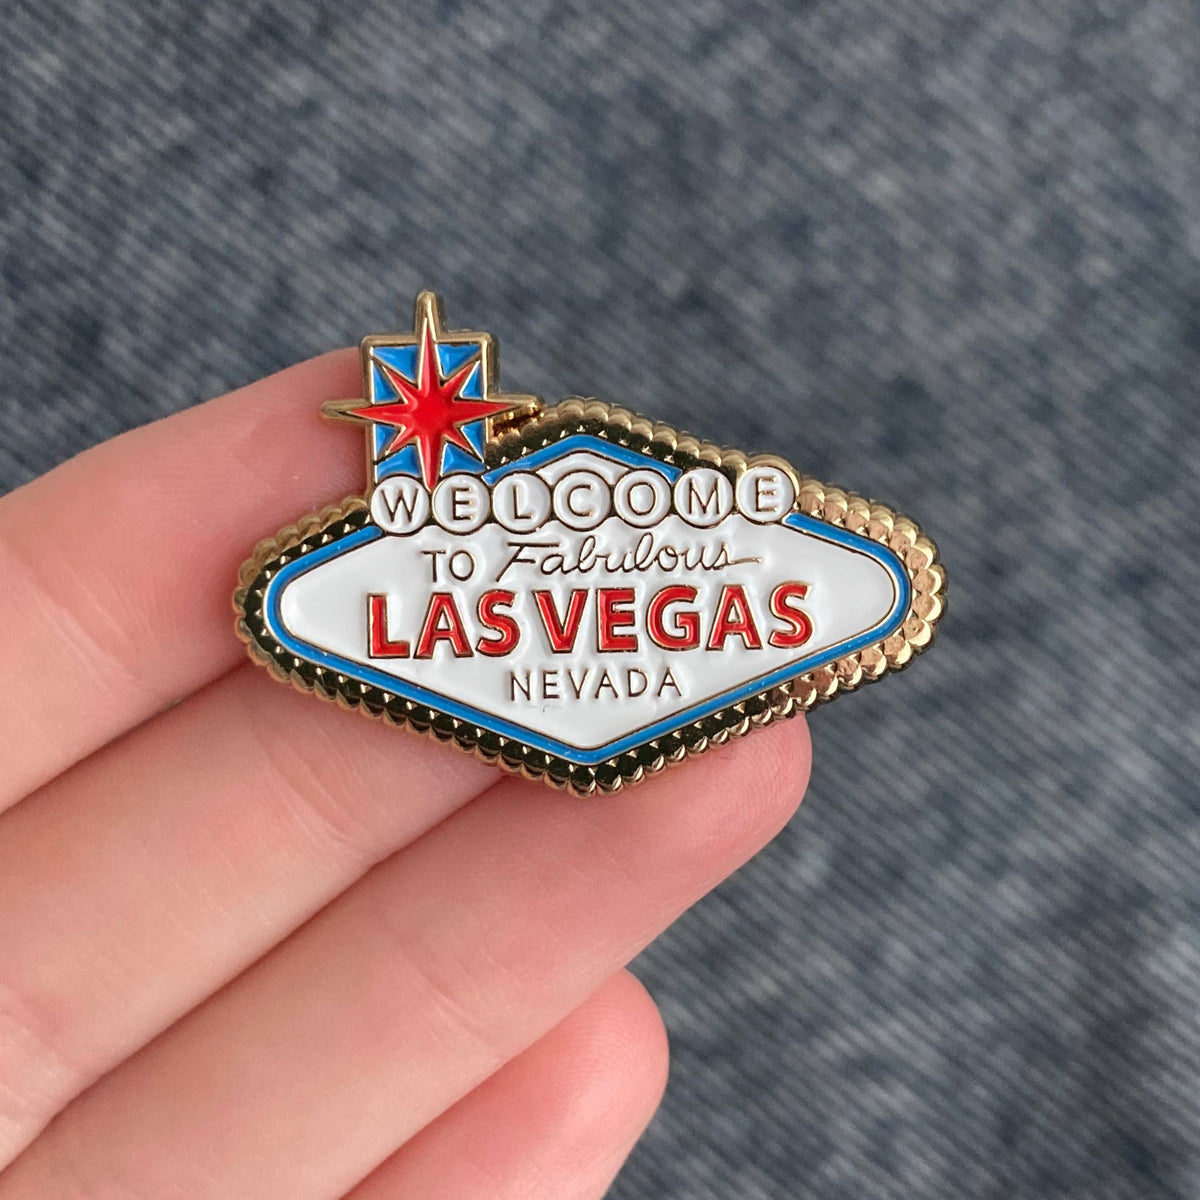 Welcome To Las Vegas Sign Enamel Pin